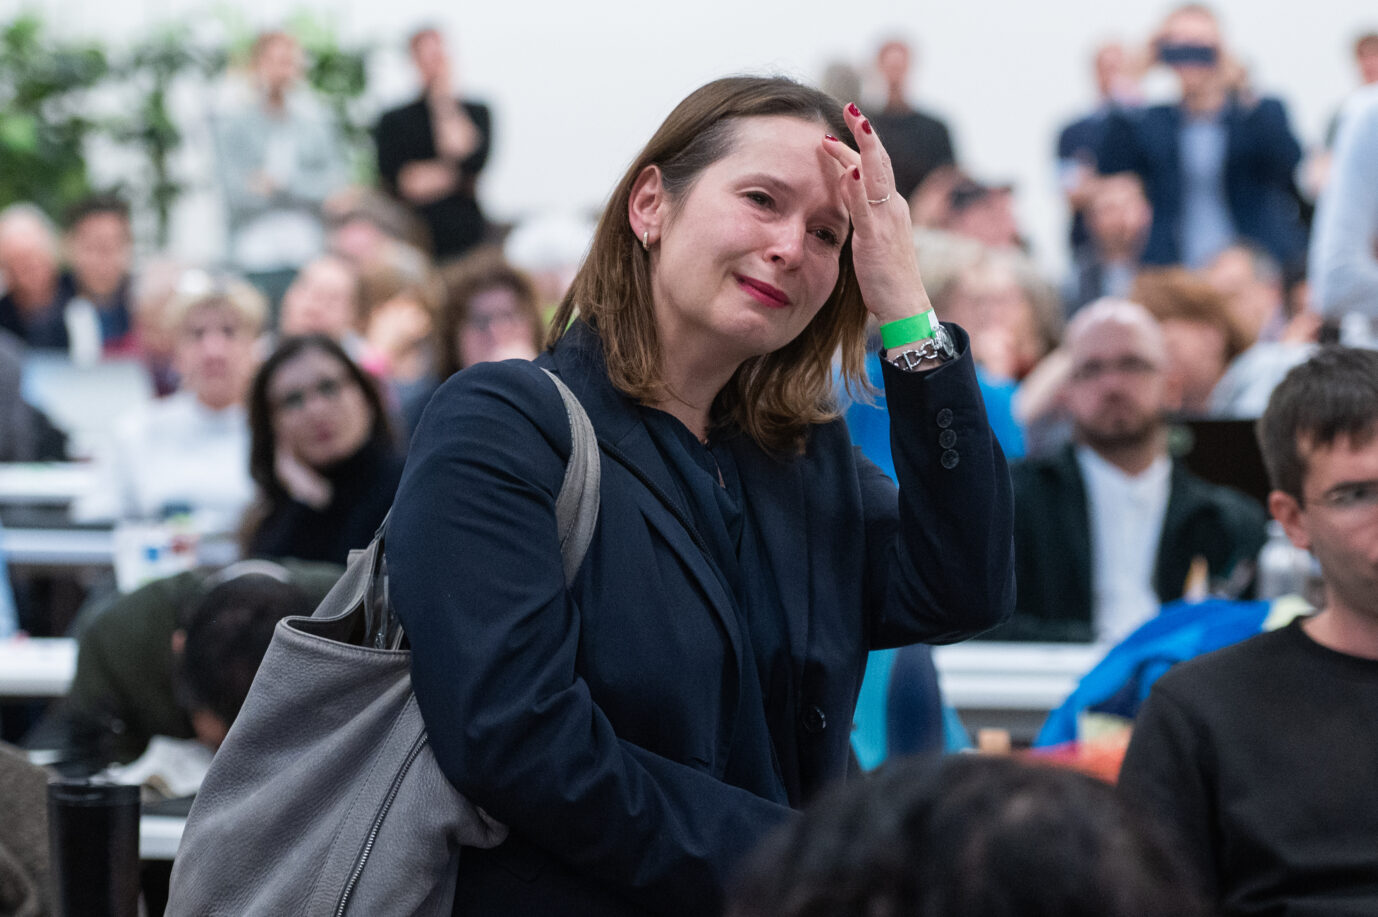 Zensur-Versuch: Dieses Bild wollen die Grünen nicht sehen. Die gescheiterte Kandidatin Tanja Prinz verläßt weinend den Parteitag. Foto: picture alliance/dpa | Christophe Gateau